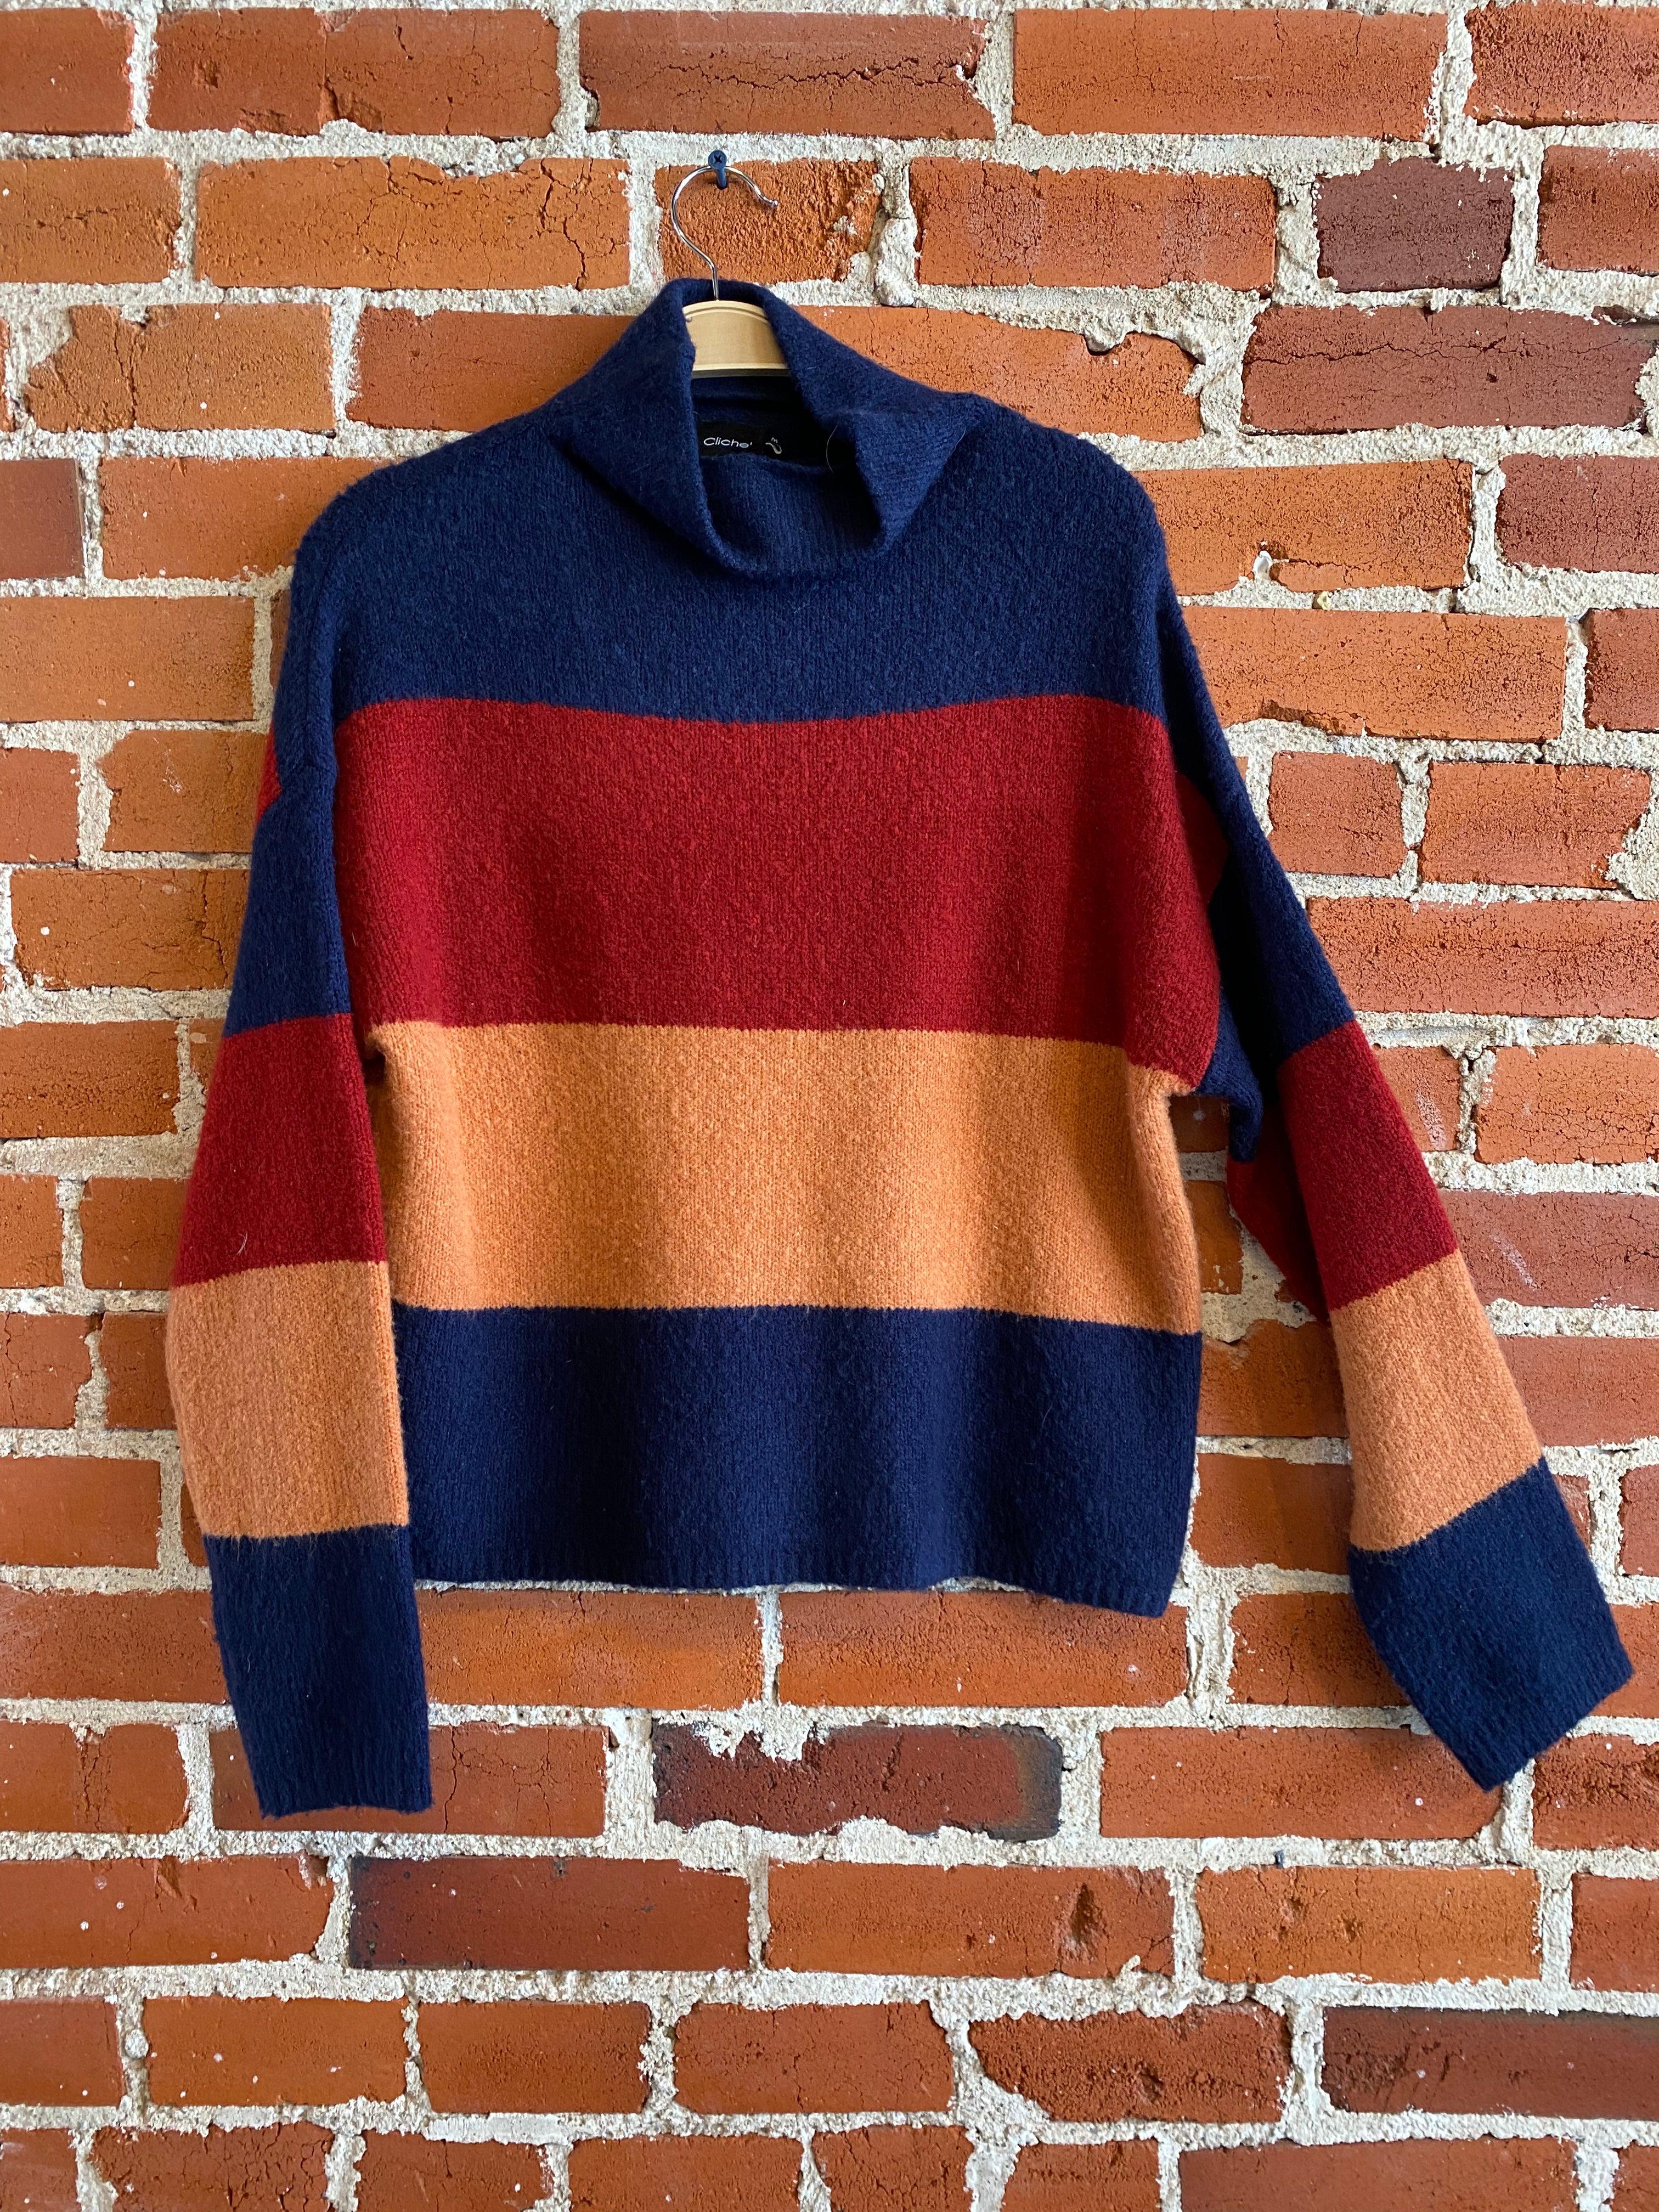 
  
  Cliche Stripe Sweater
  
